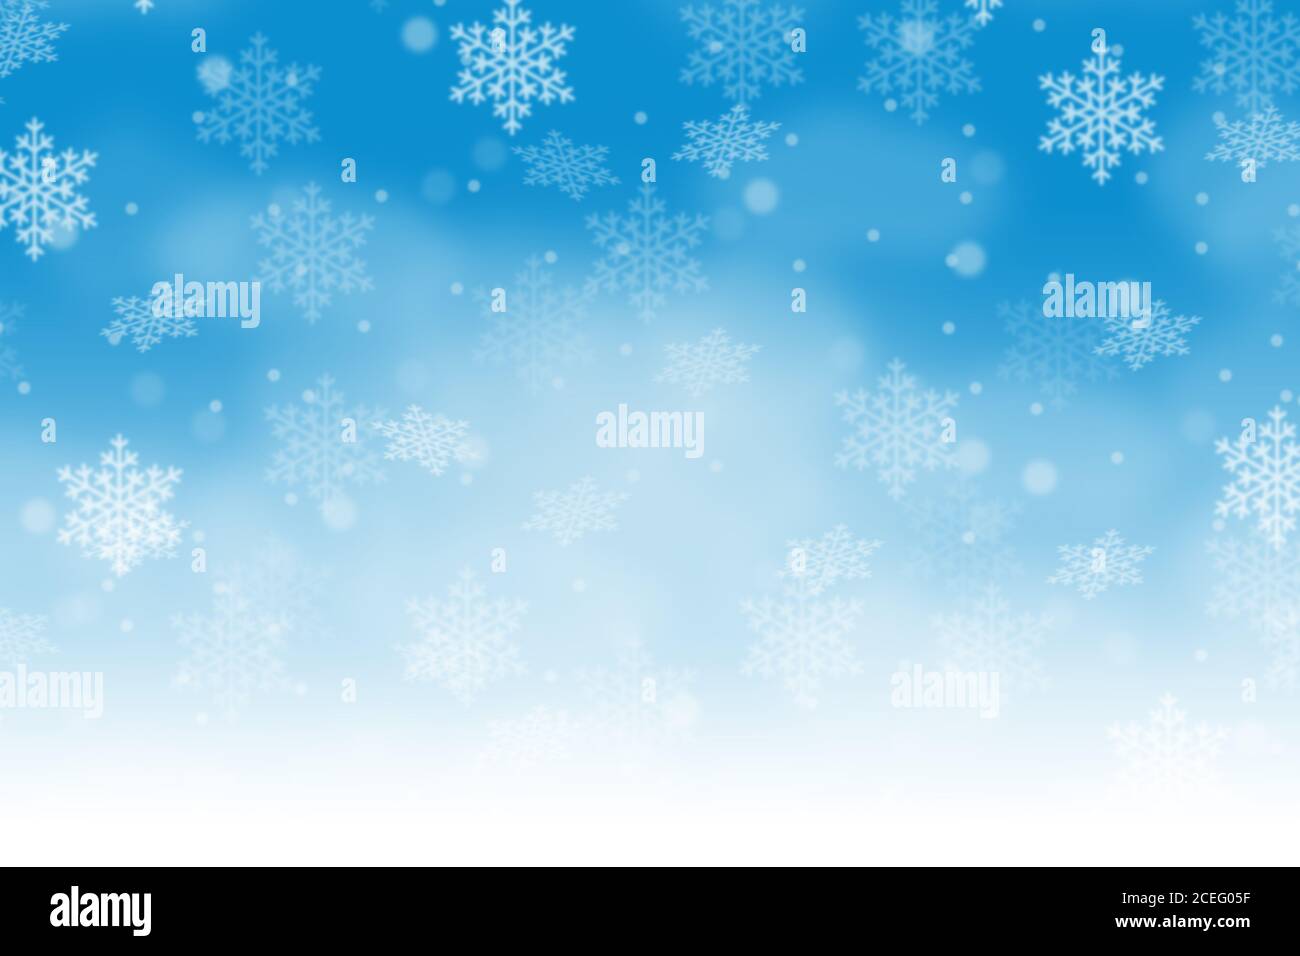 Carta di Natale sfondo modello inverno decorazione fiocchi di neve fiocchi di neve copyspace copiare lo spazio di snowing Foto Stock